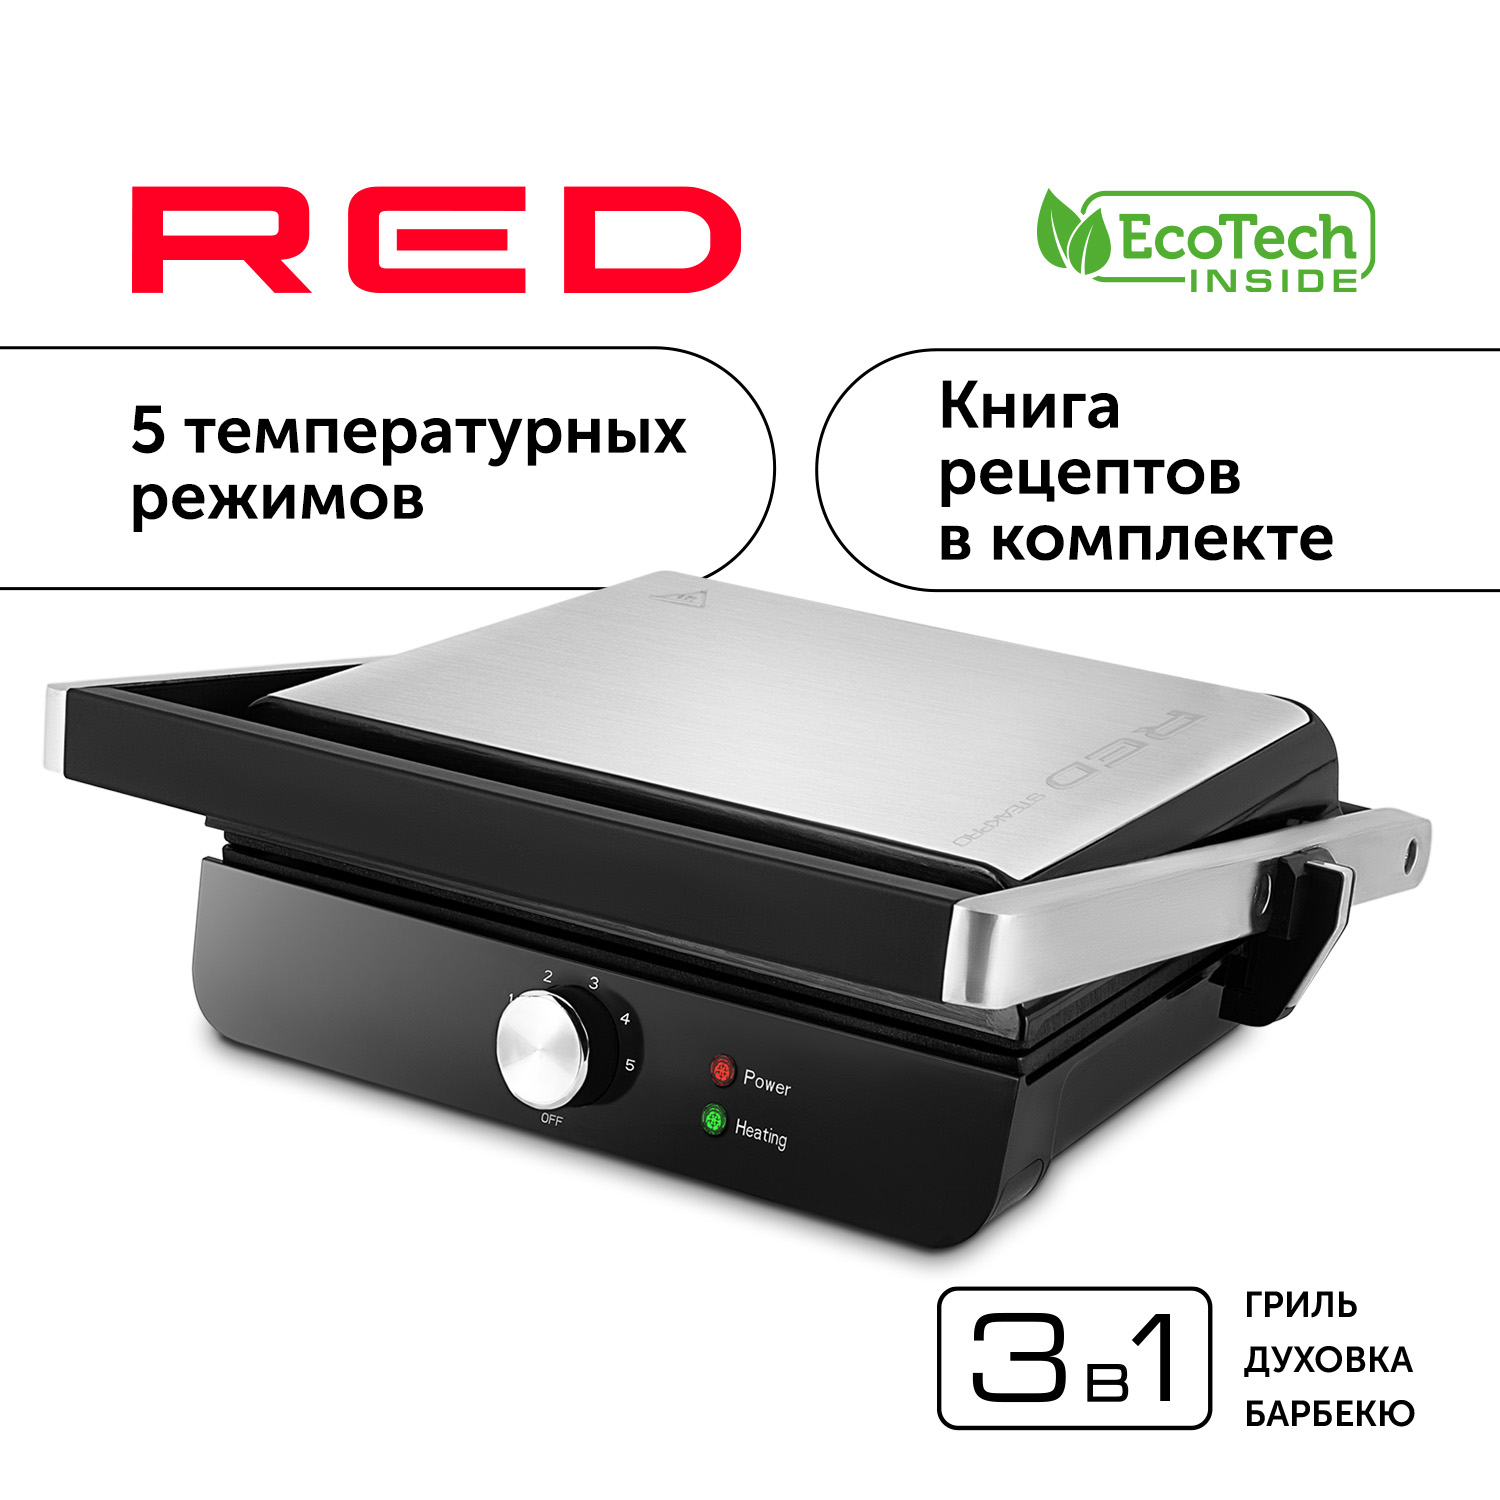 Гриль RED SOLUTION RGM-M815 серебристый, серый, черный гриль red solution rgm m835d серебристый